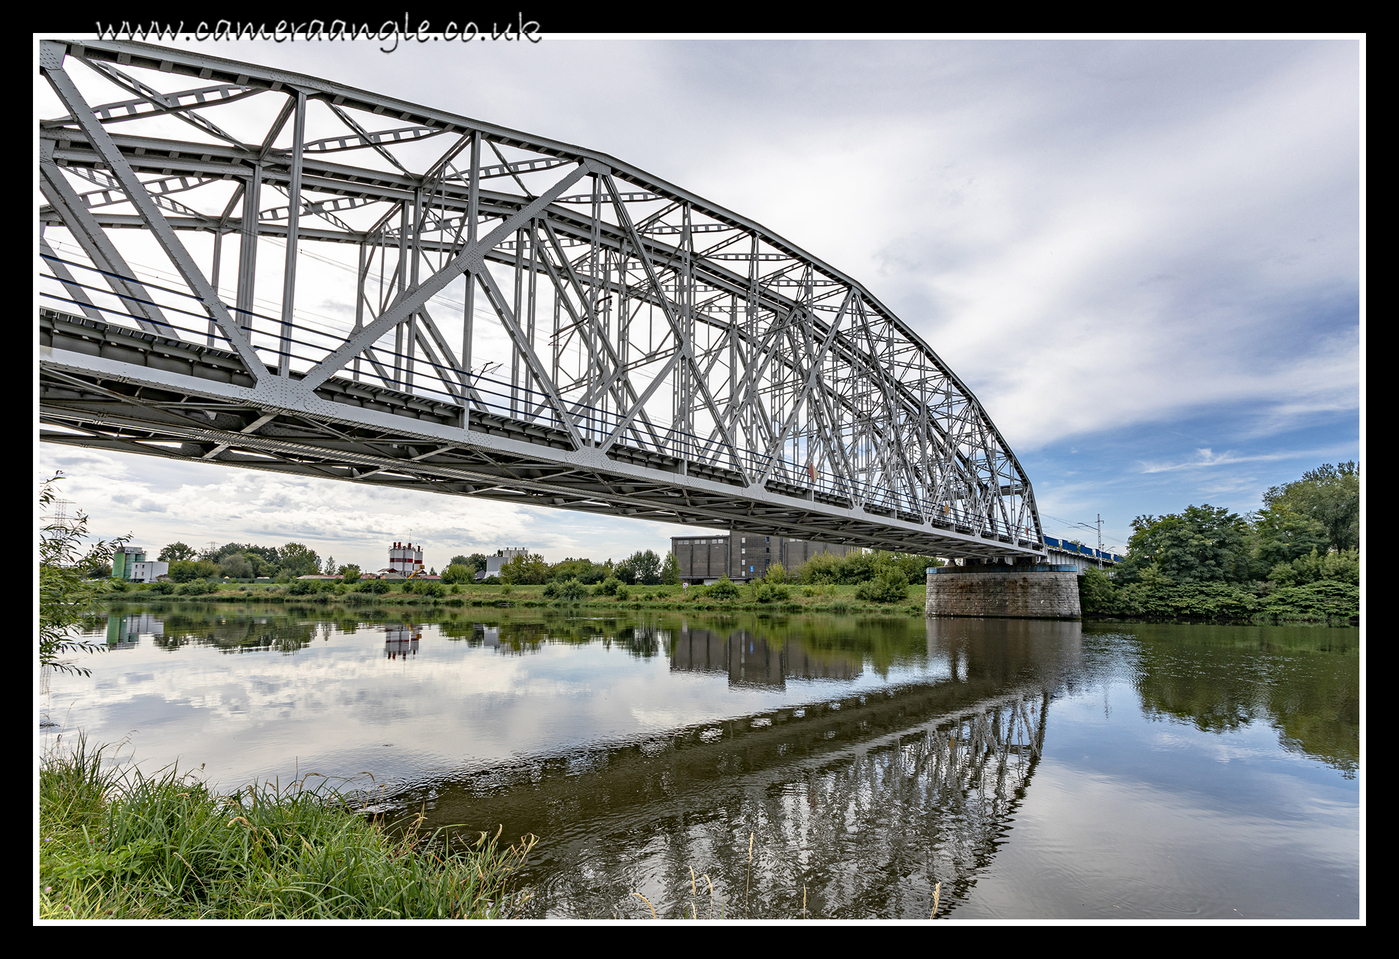 Vistula Bridge
Keywords: Vistula Bridge 2019 Krakow